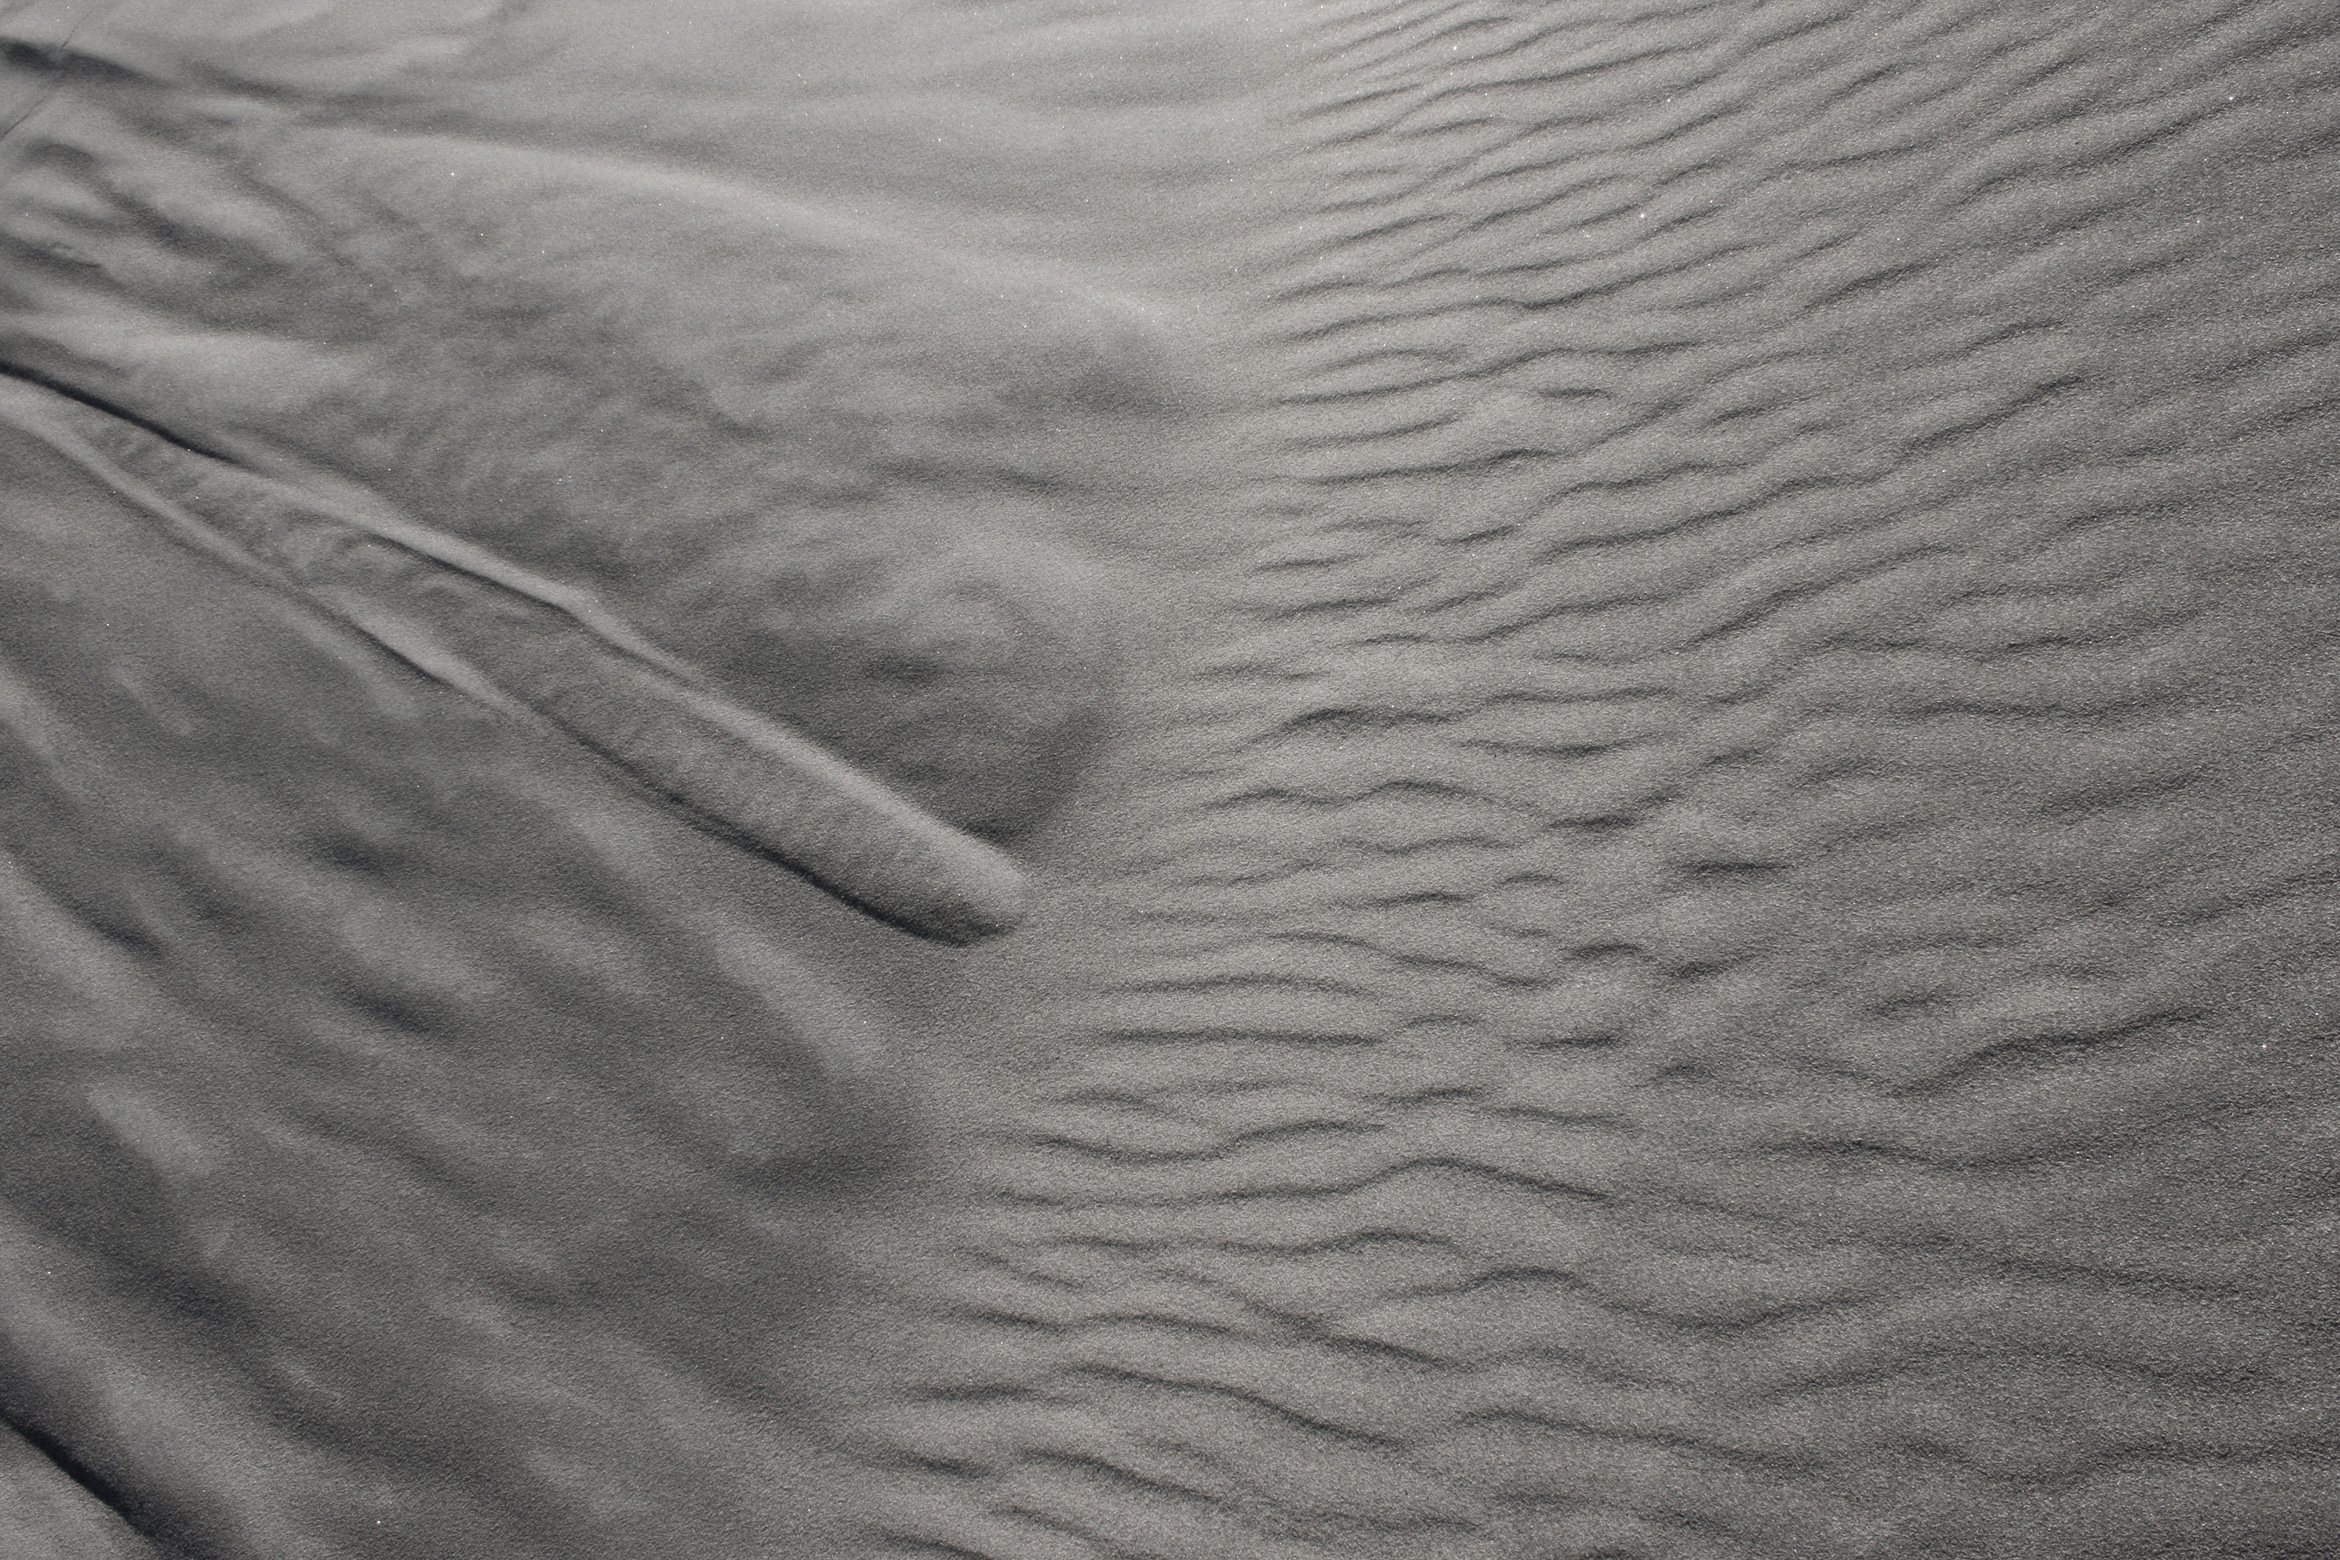 sand-patterns-wind-black-sand-nz1